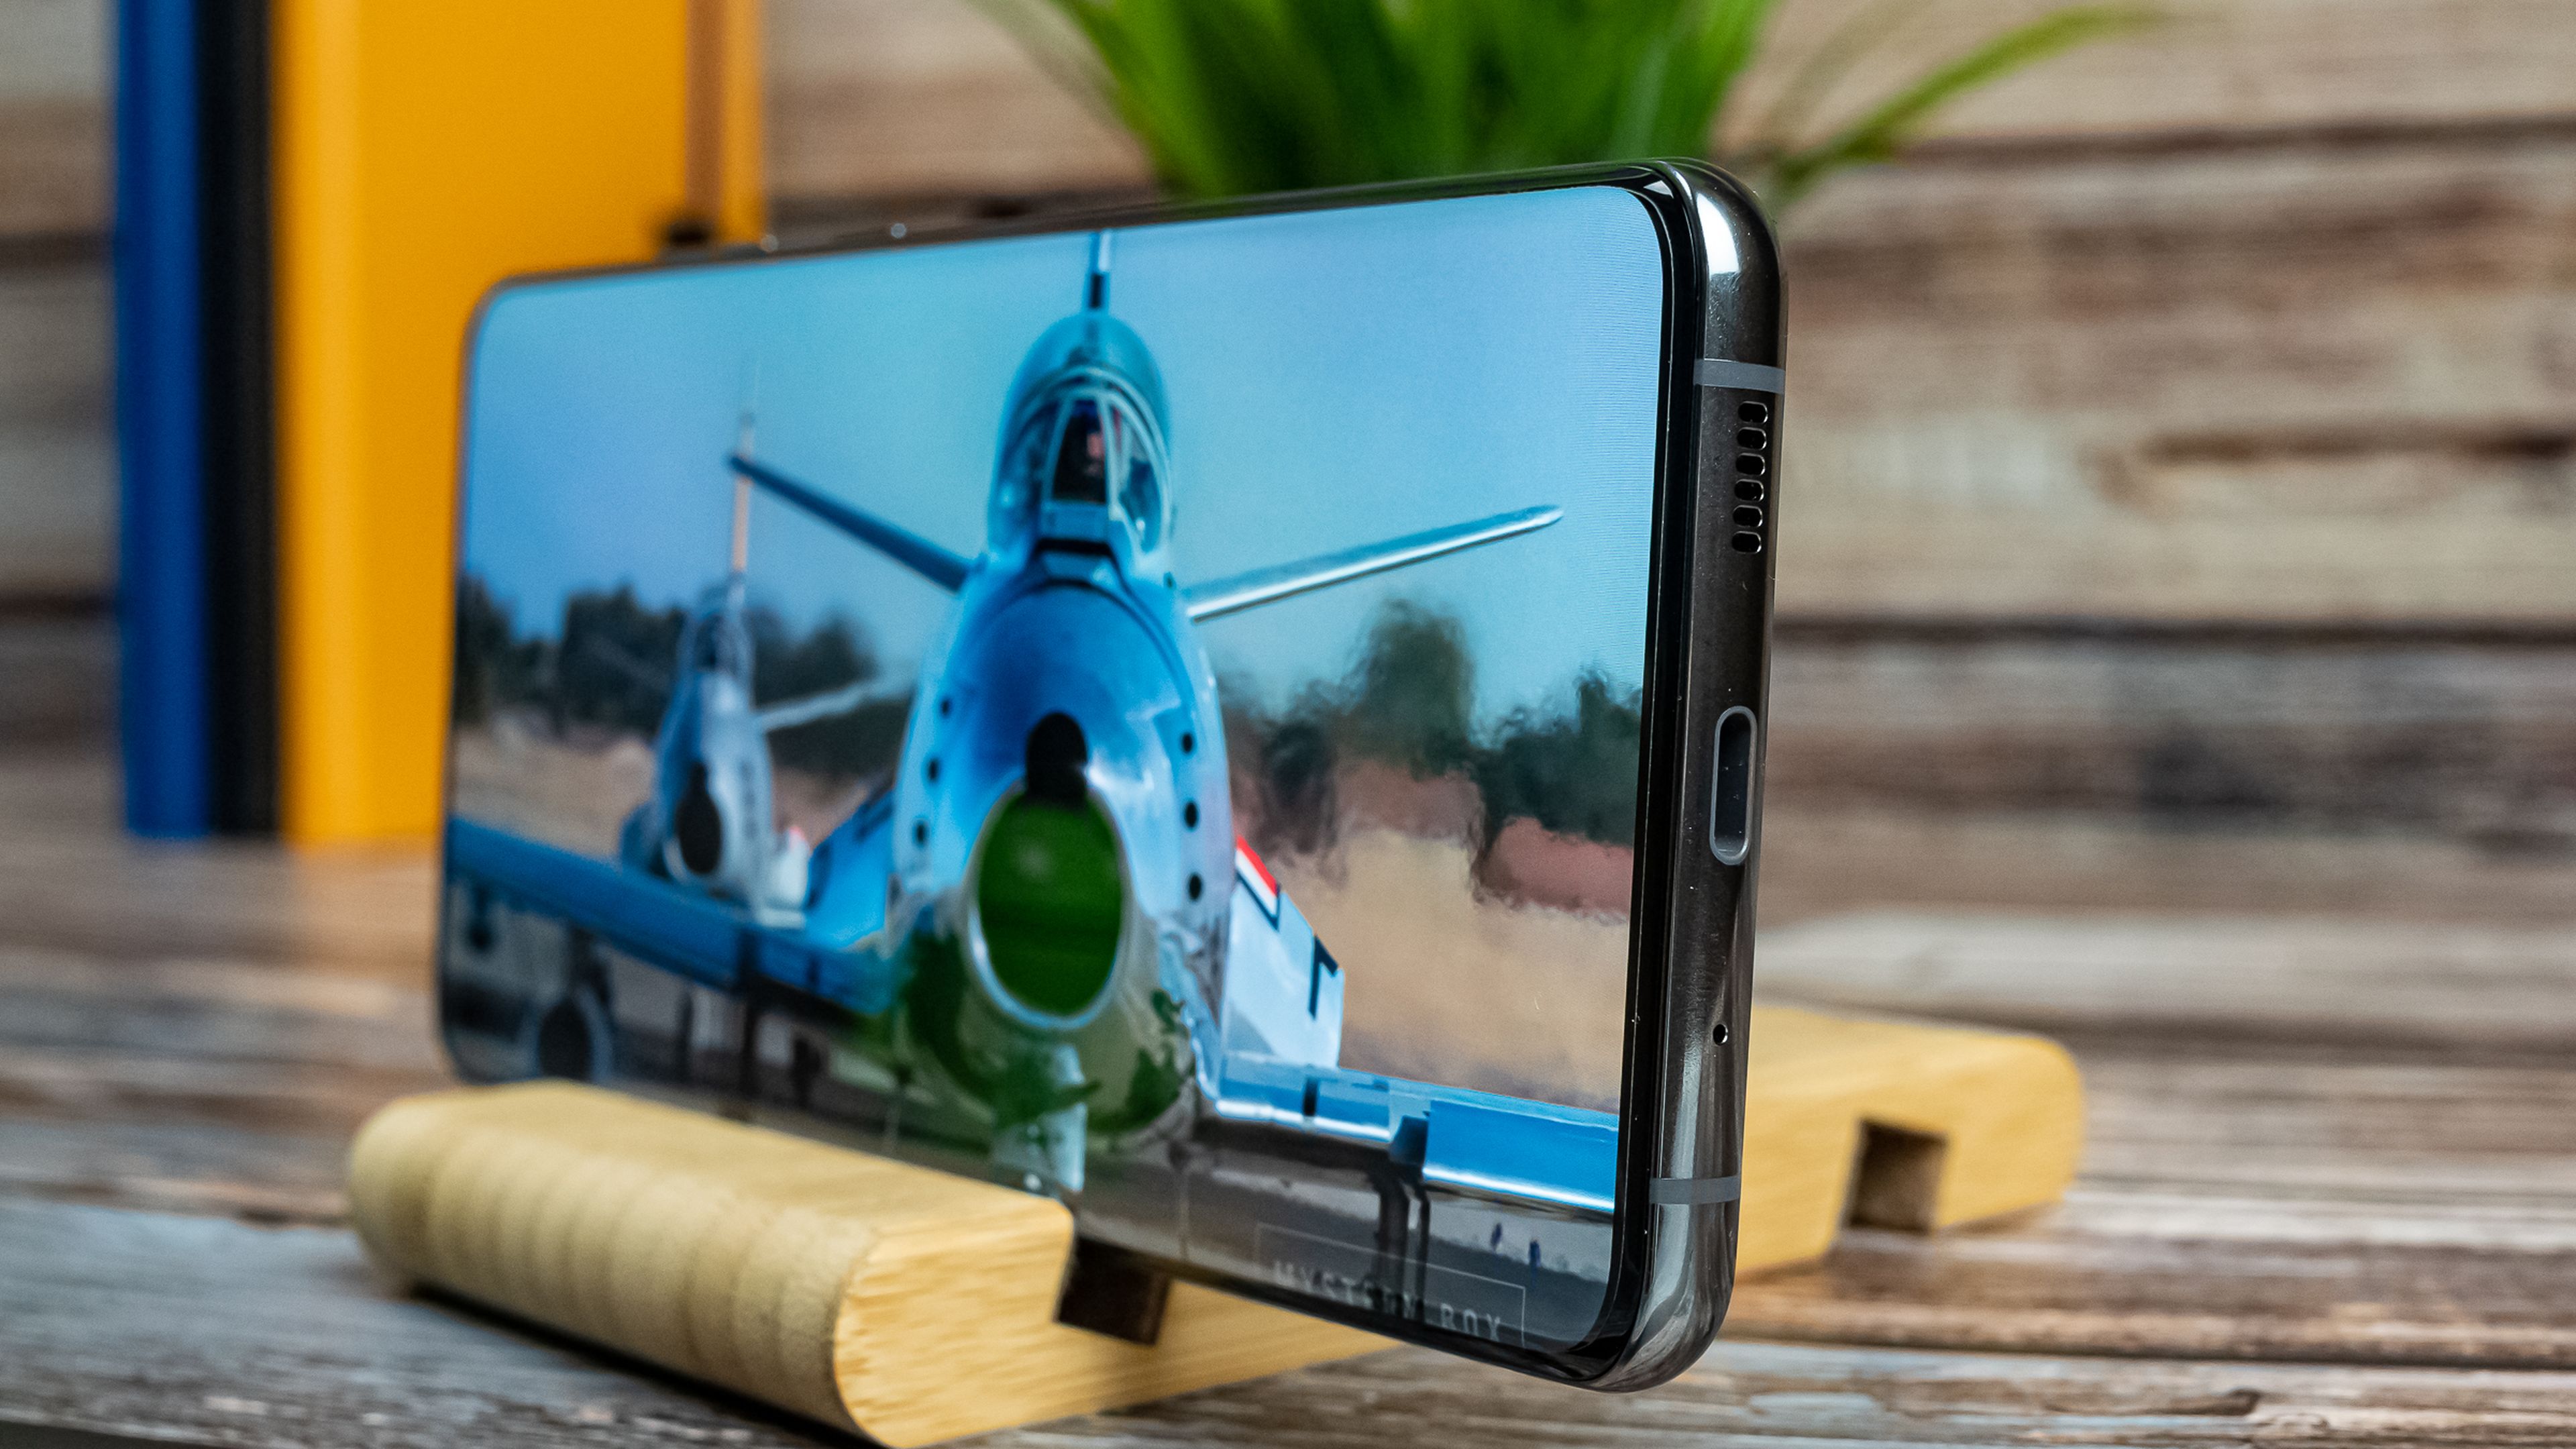 Samsung Galaxy S20 Ultra, análisis y opinión